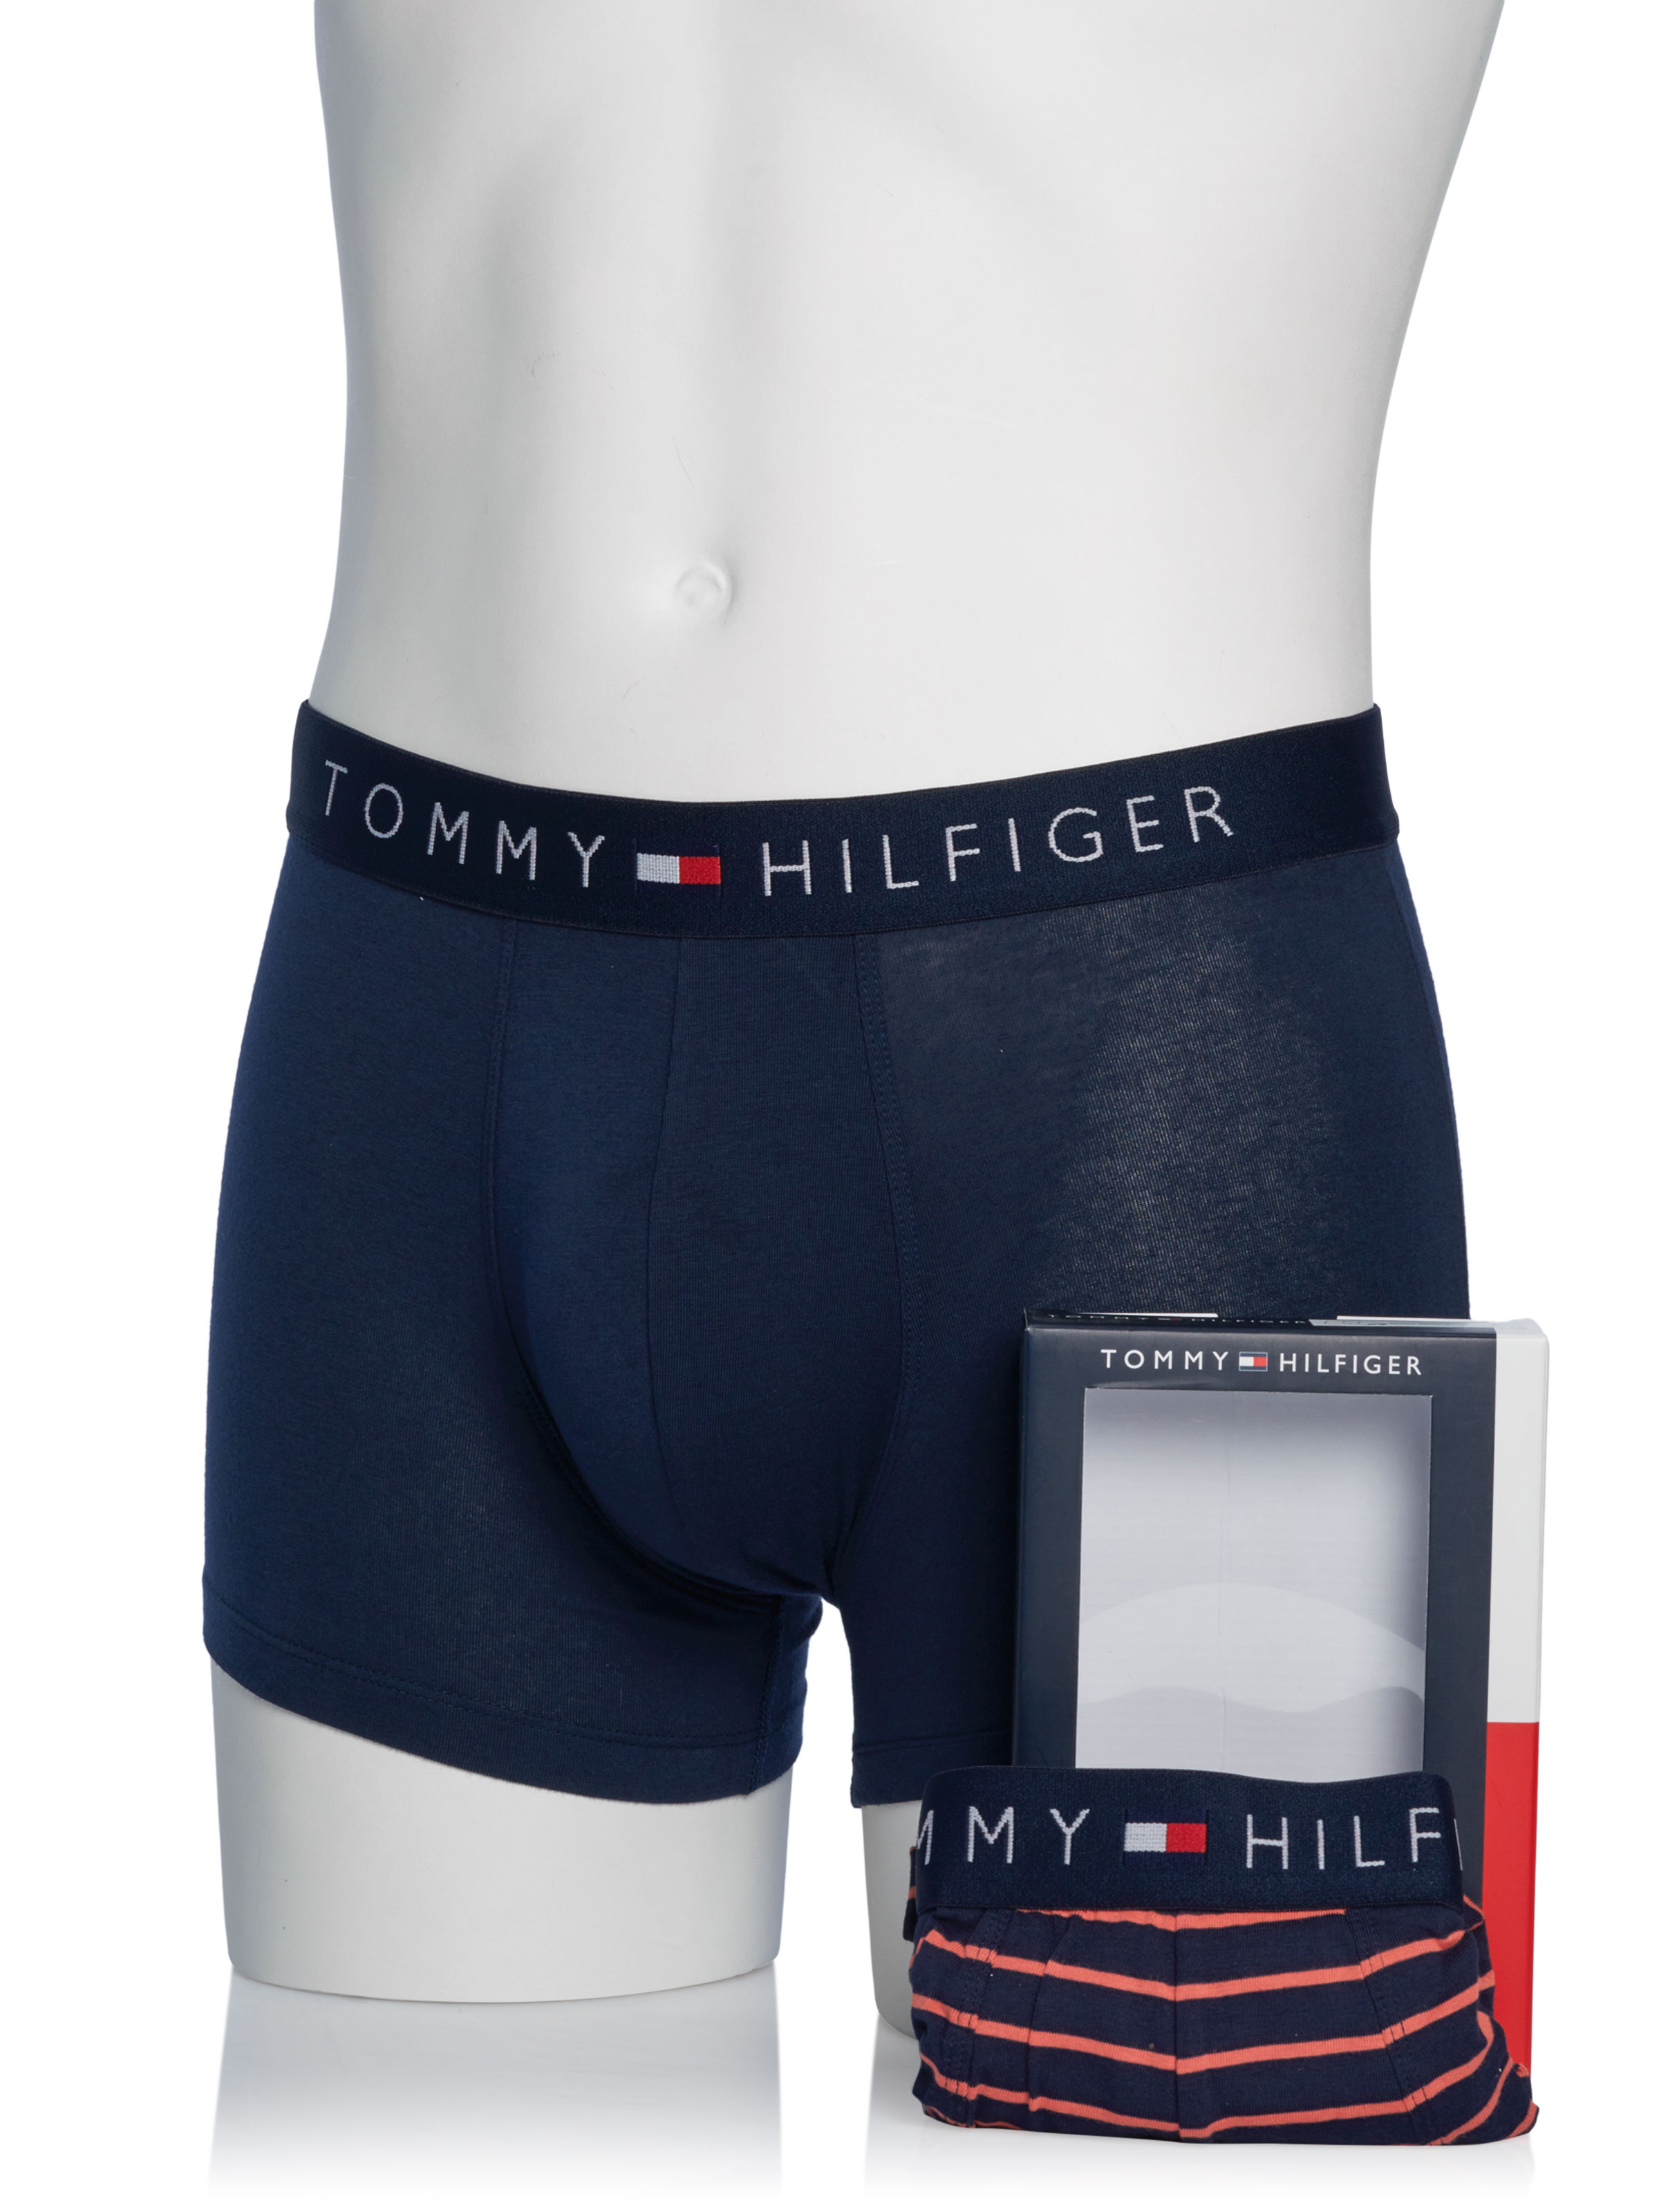 Tommy Hilfiger underwear double pack blue on SALE | Fashionesta